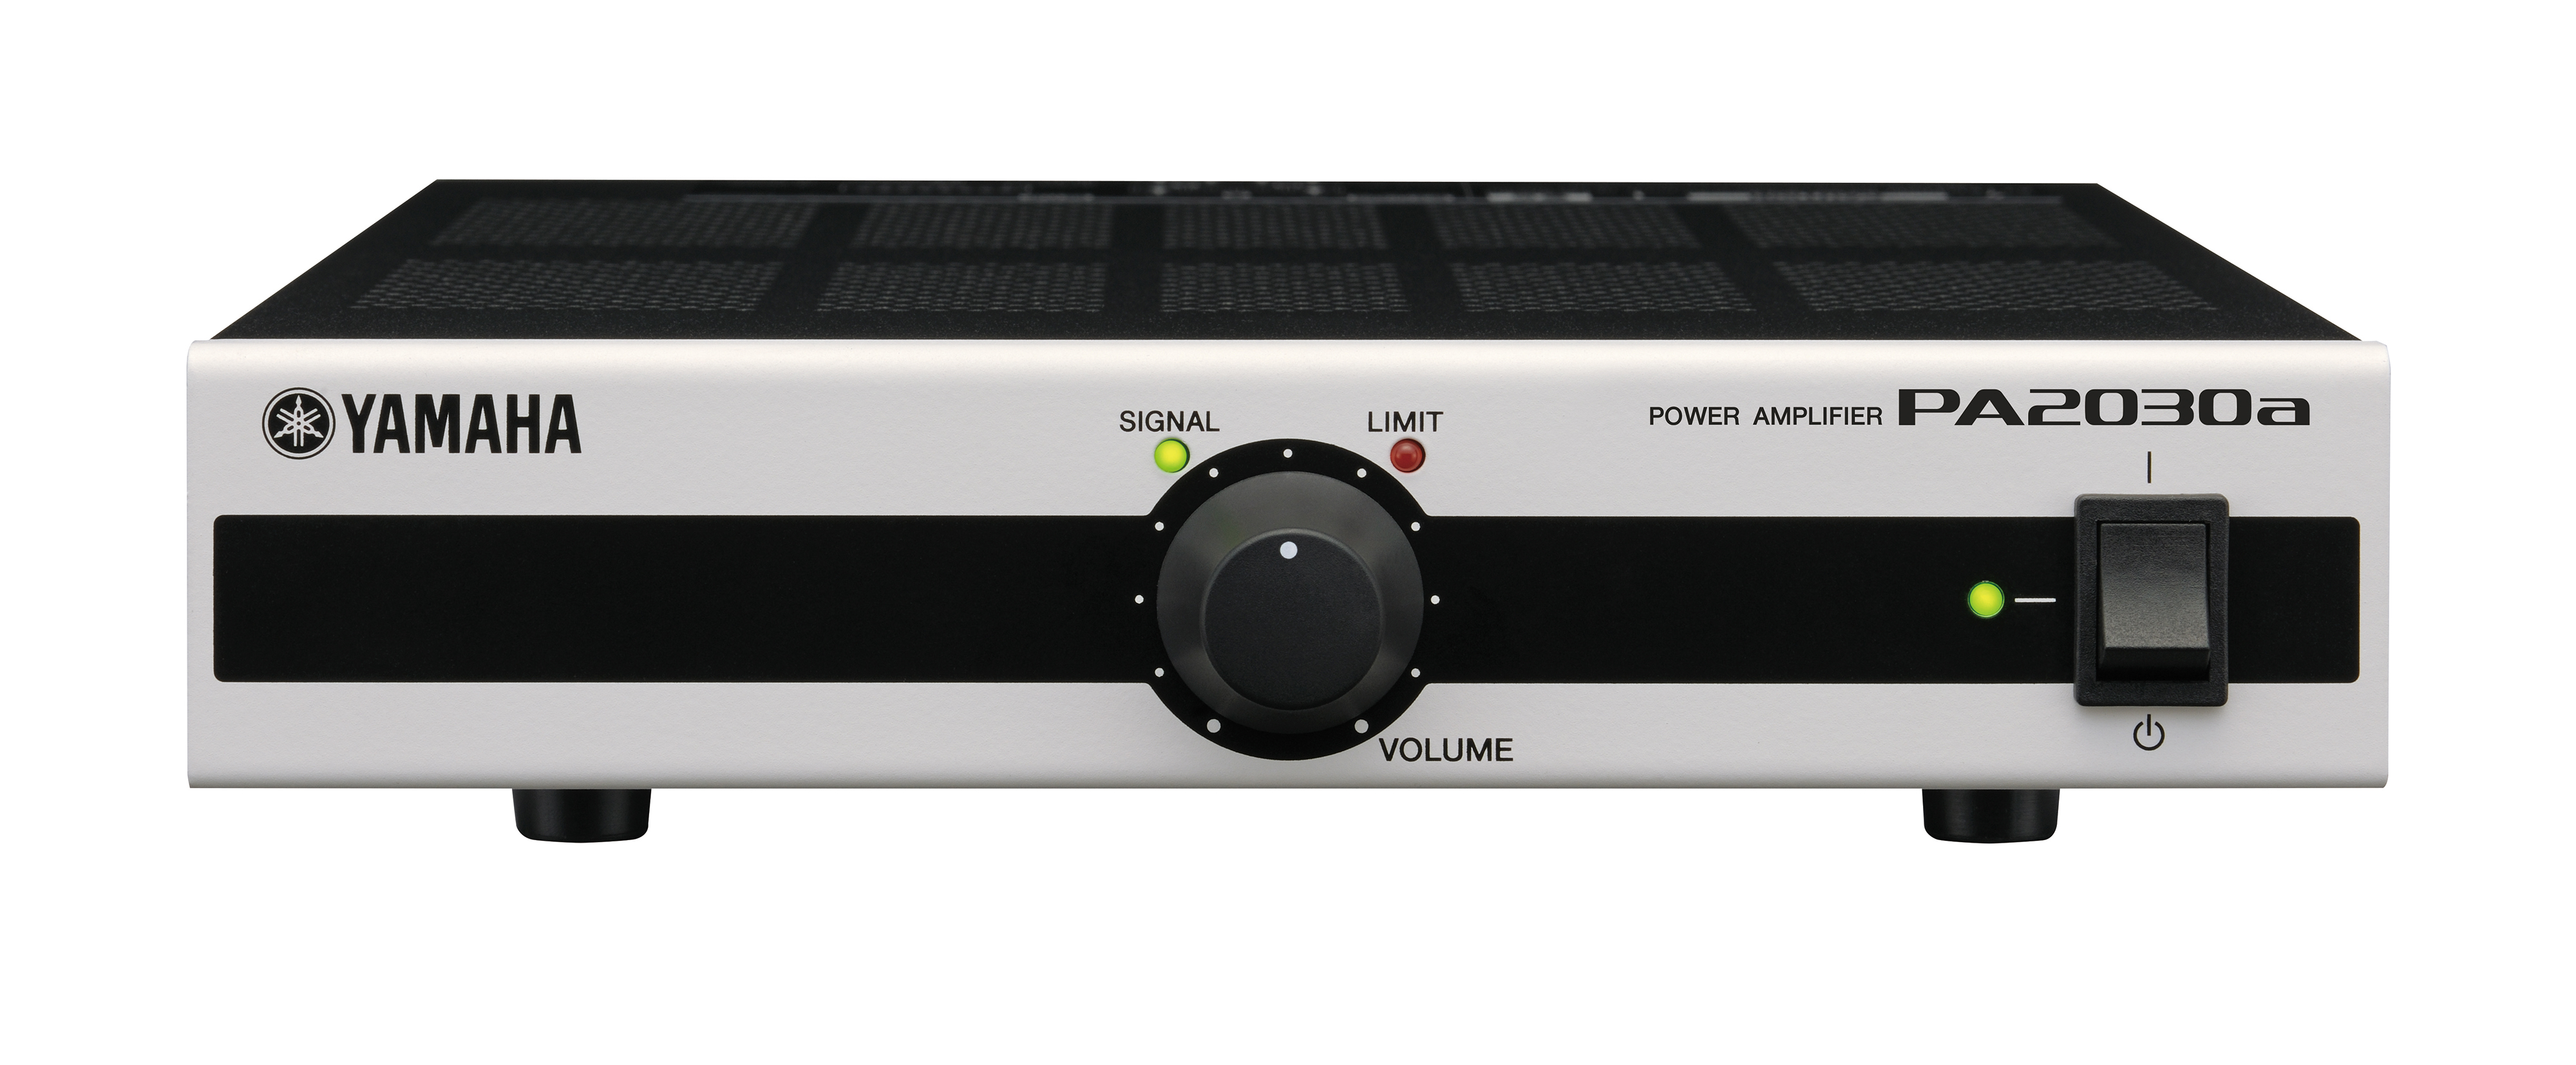 雅马哈(YAMAHA) PA2030a 多功能功放 商用安装功放 2.0声道专业功放 金属外观可用于ktv音响